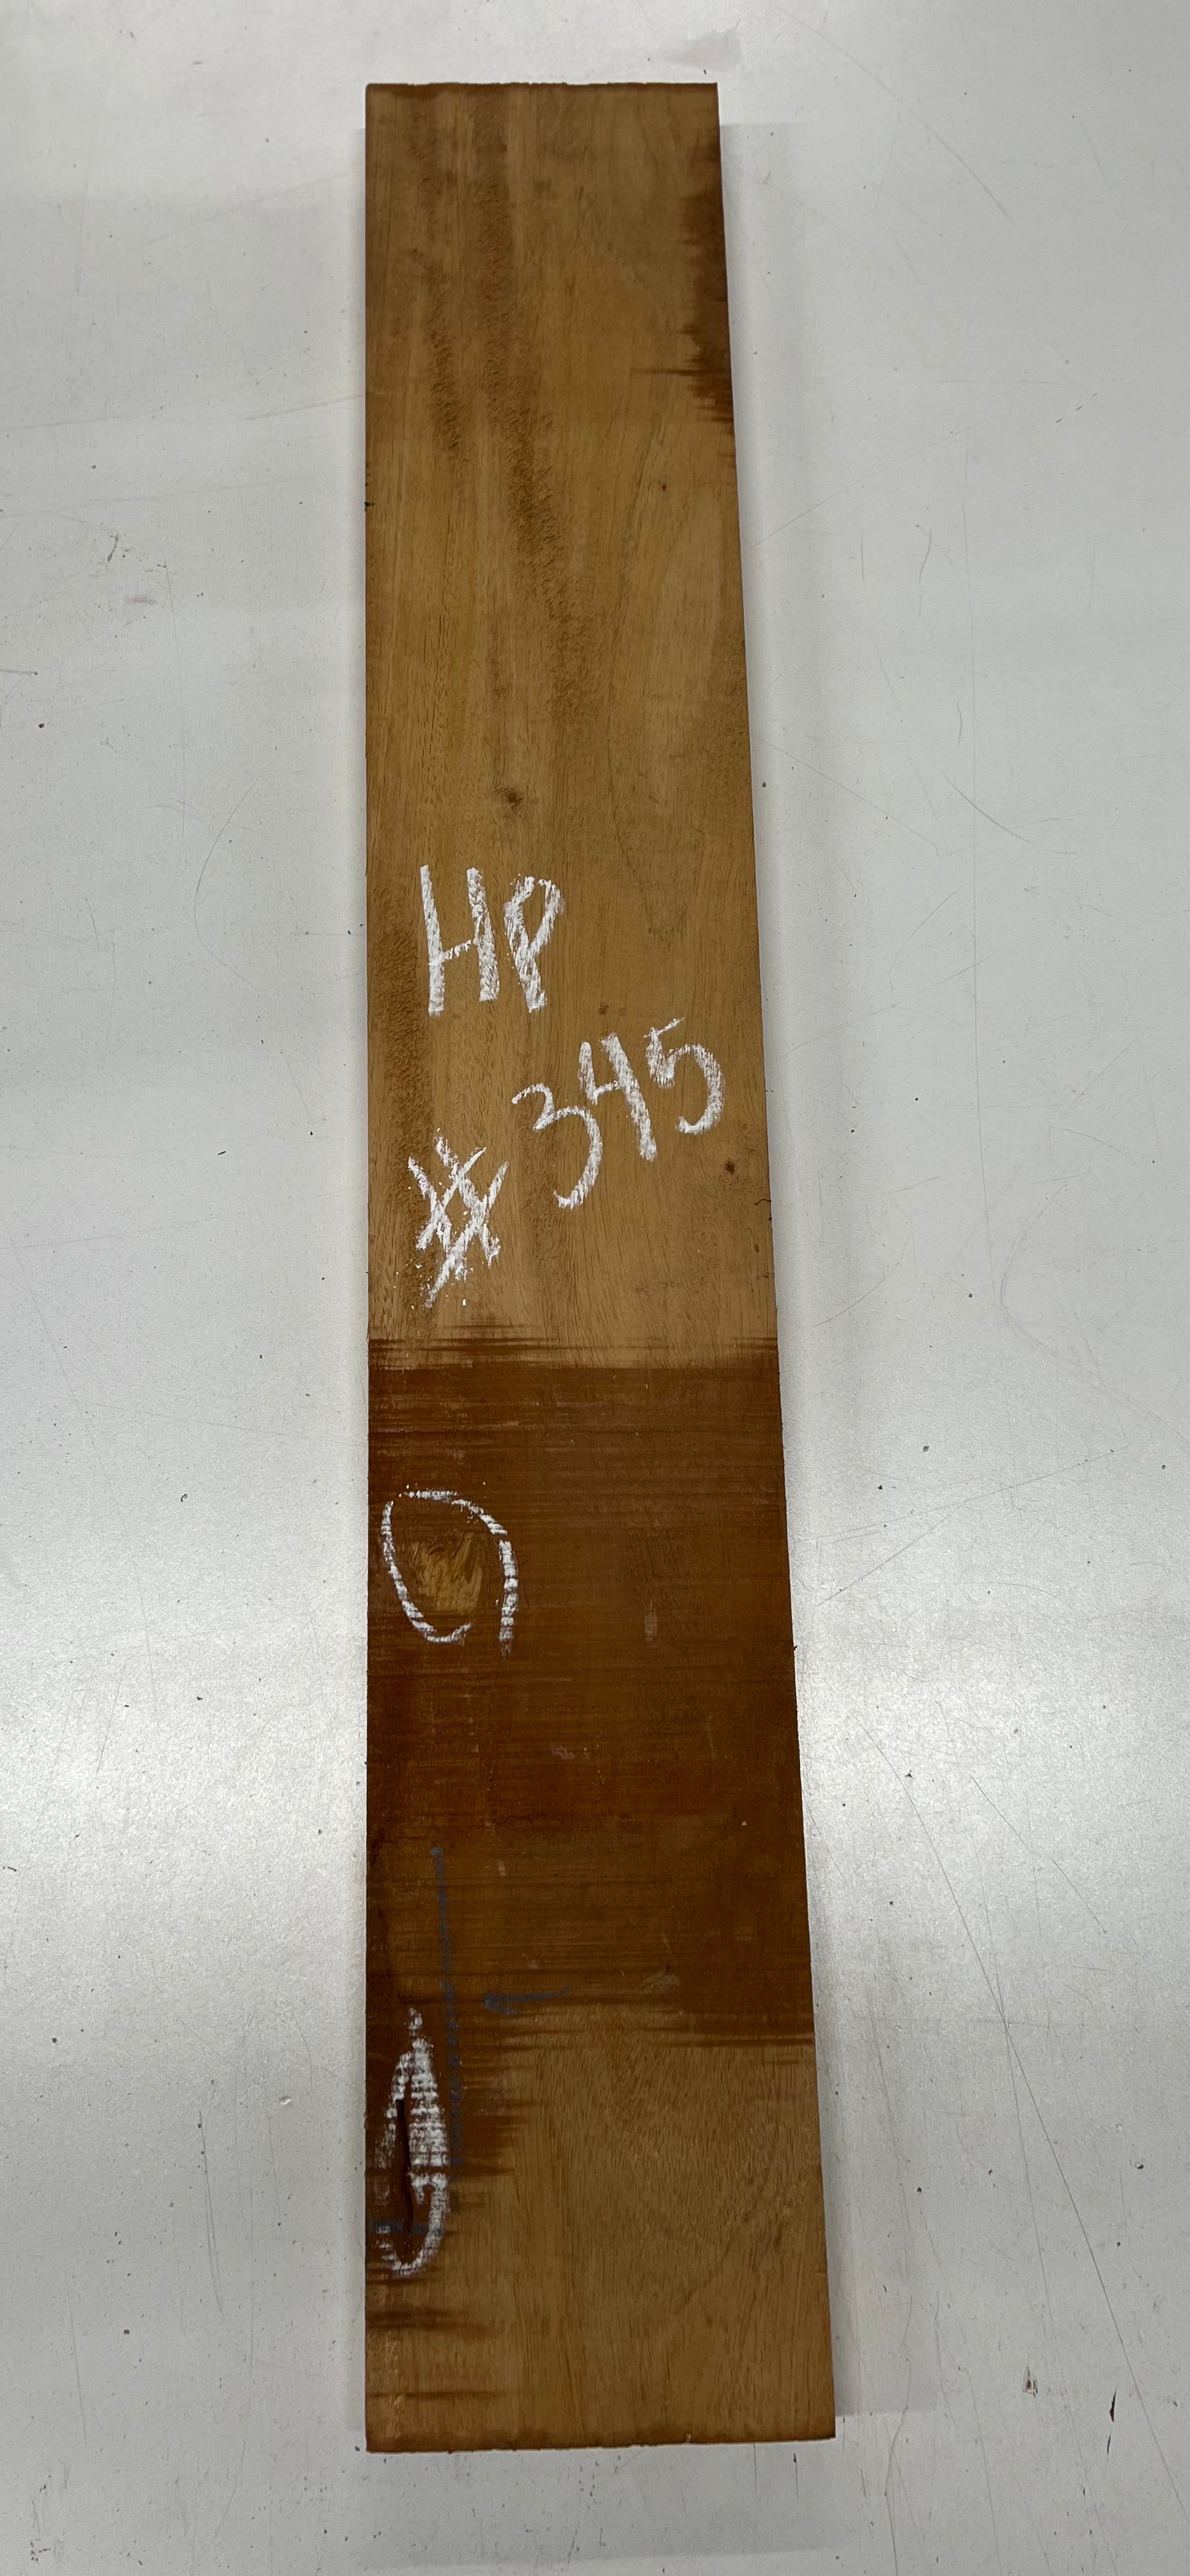 Honduran Mahogany Lumber Board Wood Blank 33&quot;x 5-1/2&quot;x 1&quot; 